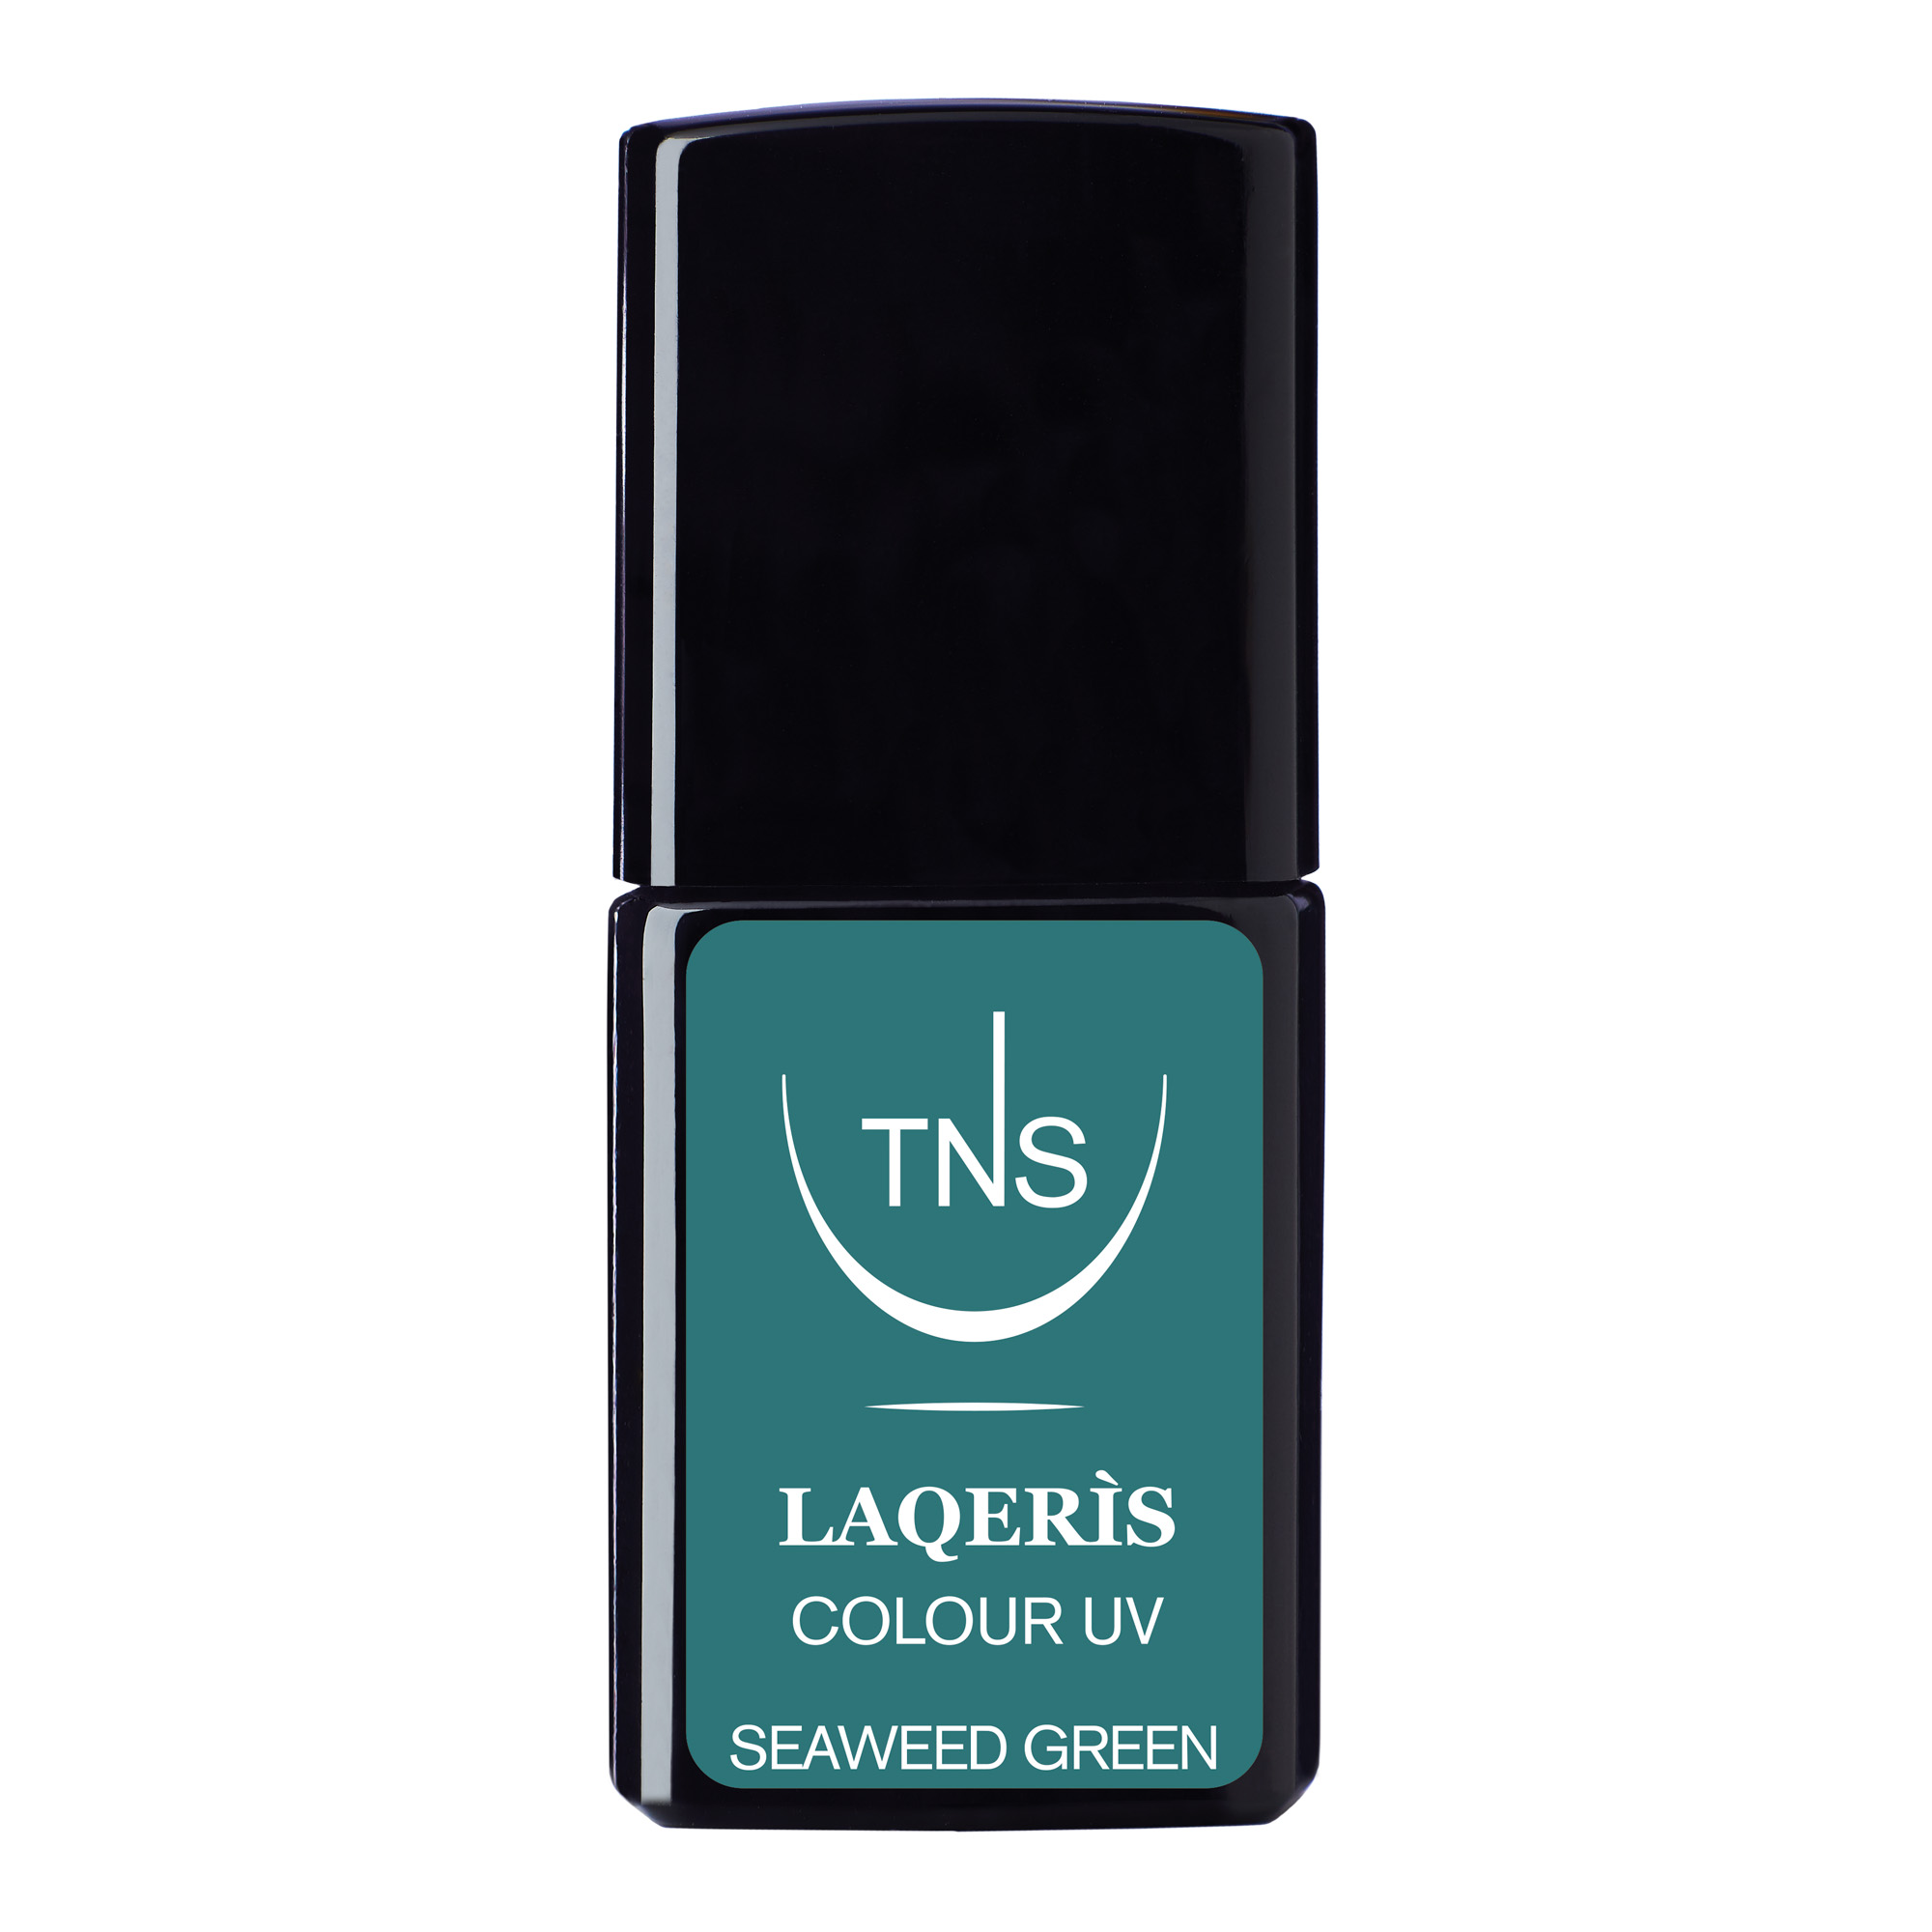 Smalto semipermanente verde smeraldo scuro Seaweed Green 10 ml Laqerìs TNS